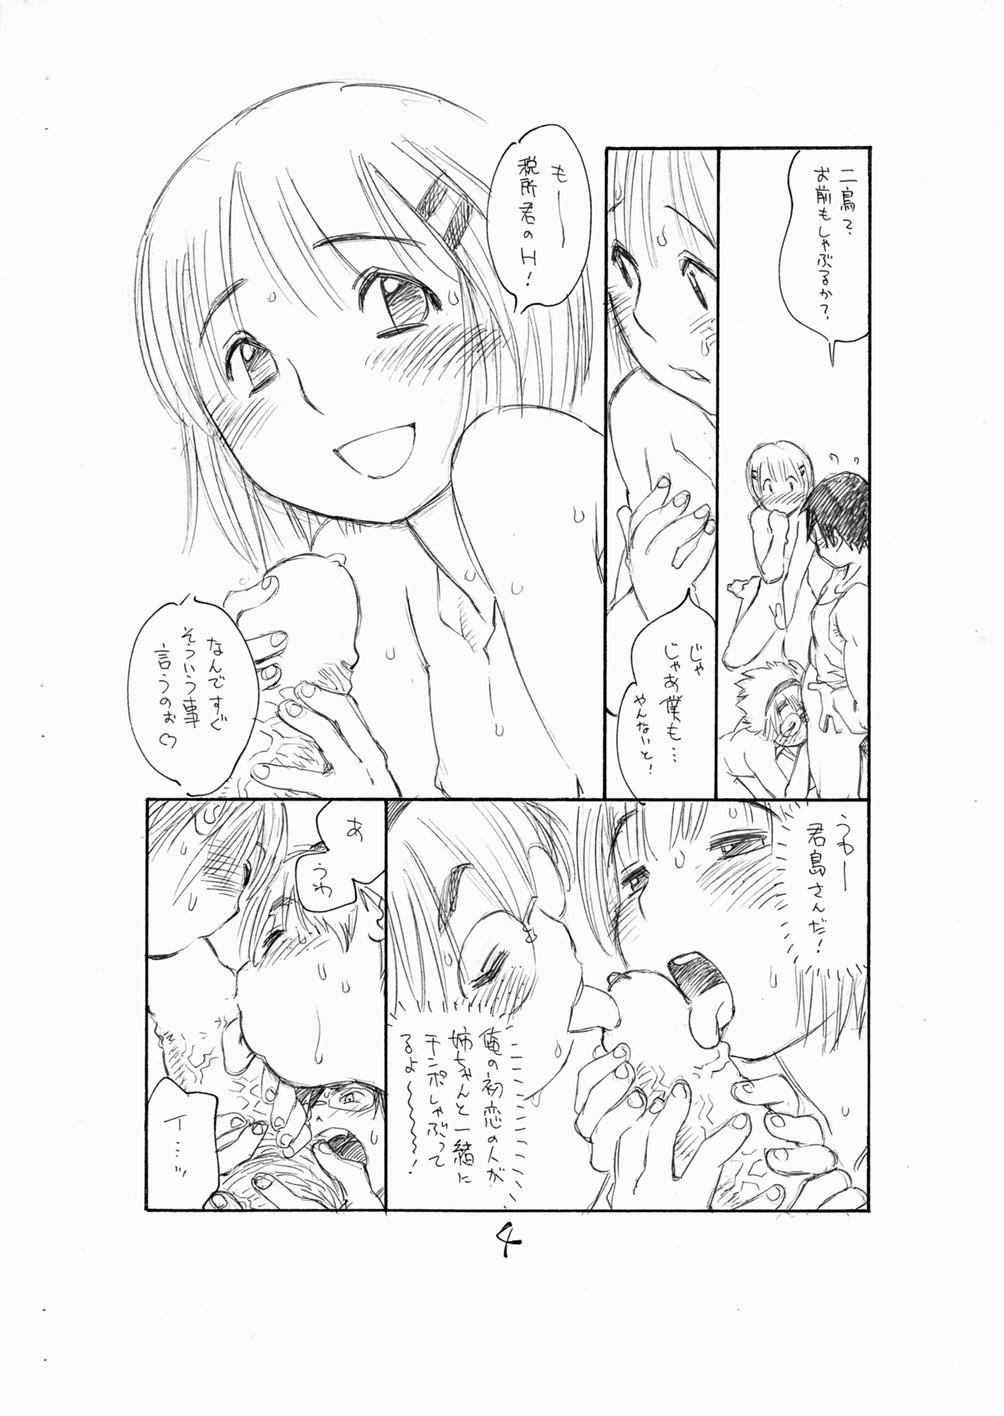 Tiny Titties Bokutachi Otokonoko 3 - Hourou musuko Skirt - Page 6